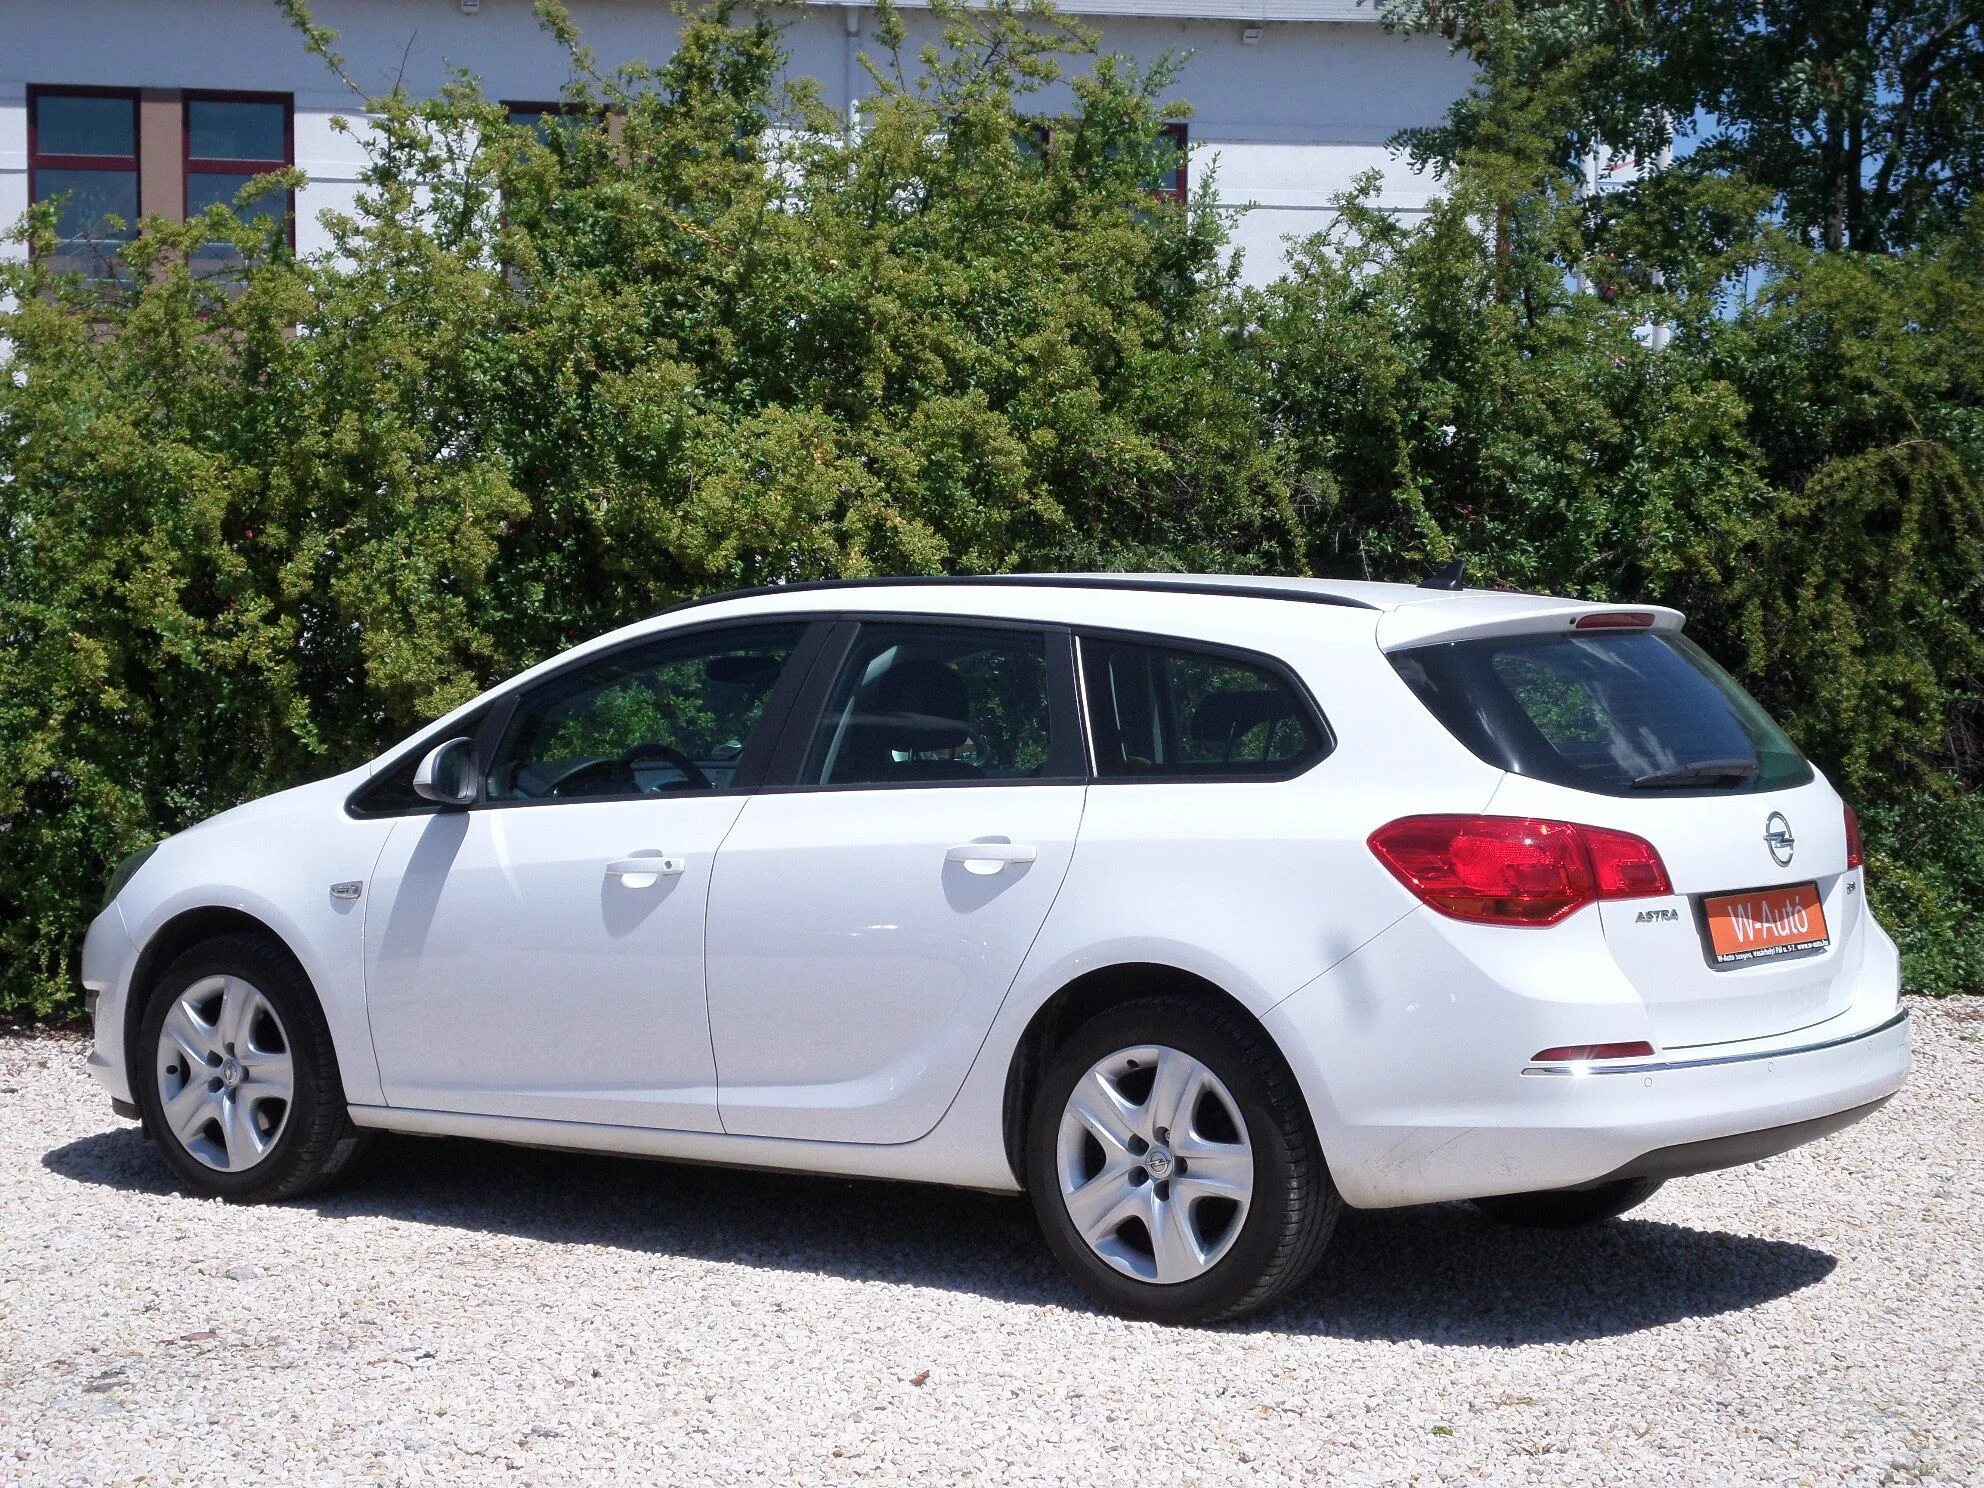 Opel Astra универсал 2011. Opel Astra j 2011 универсал. Opel Astra h универсал 2011.